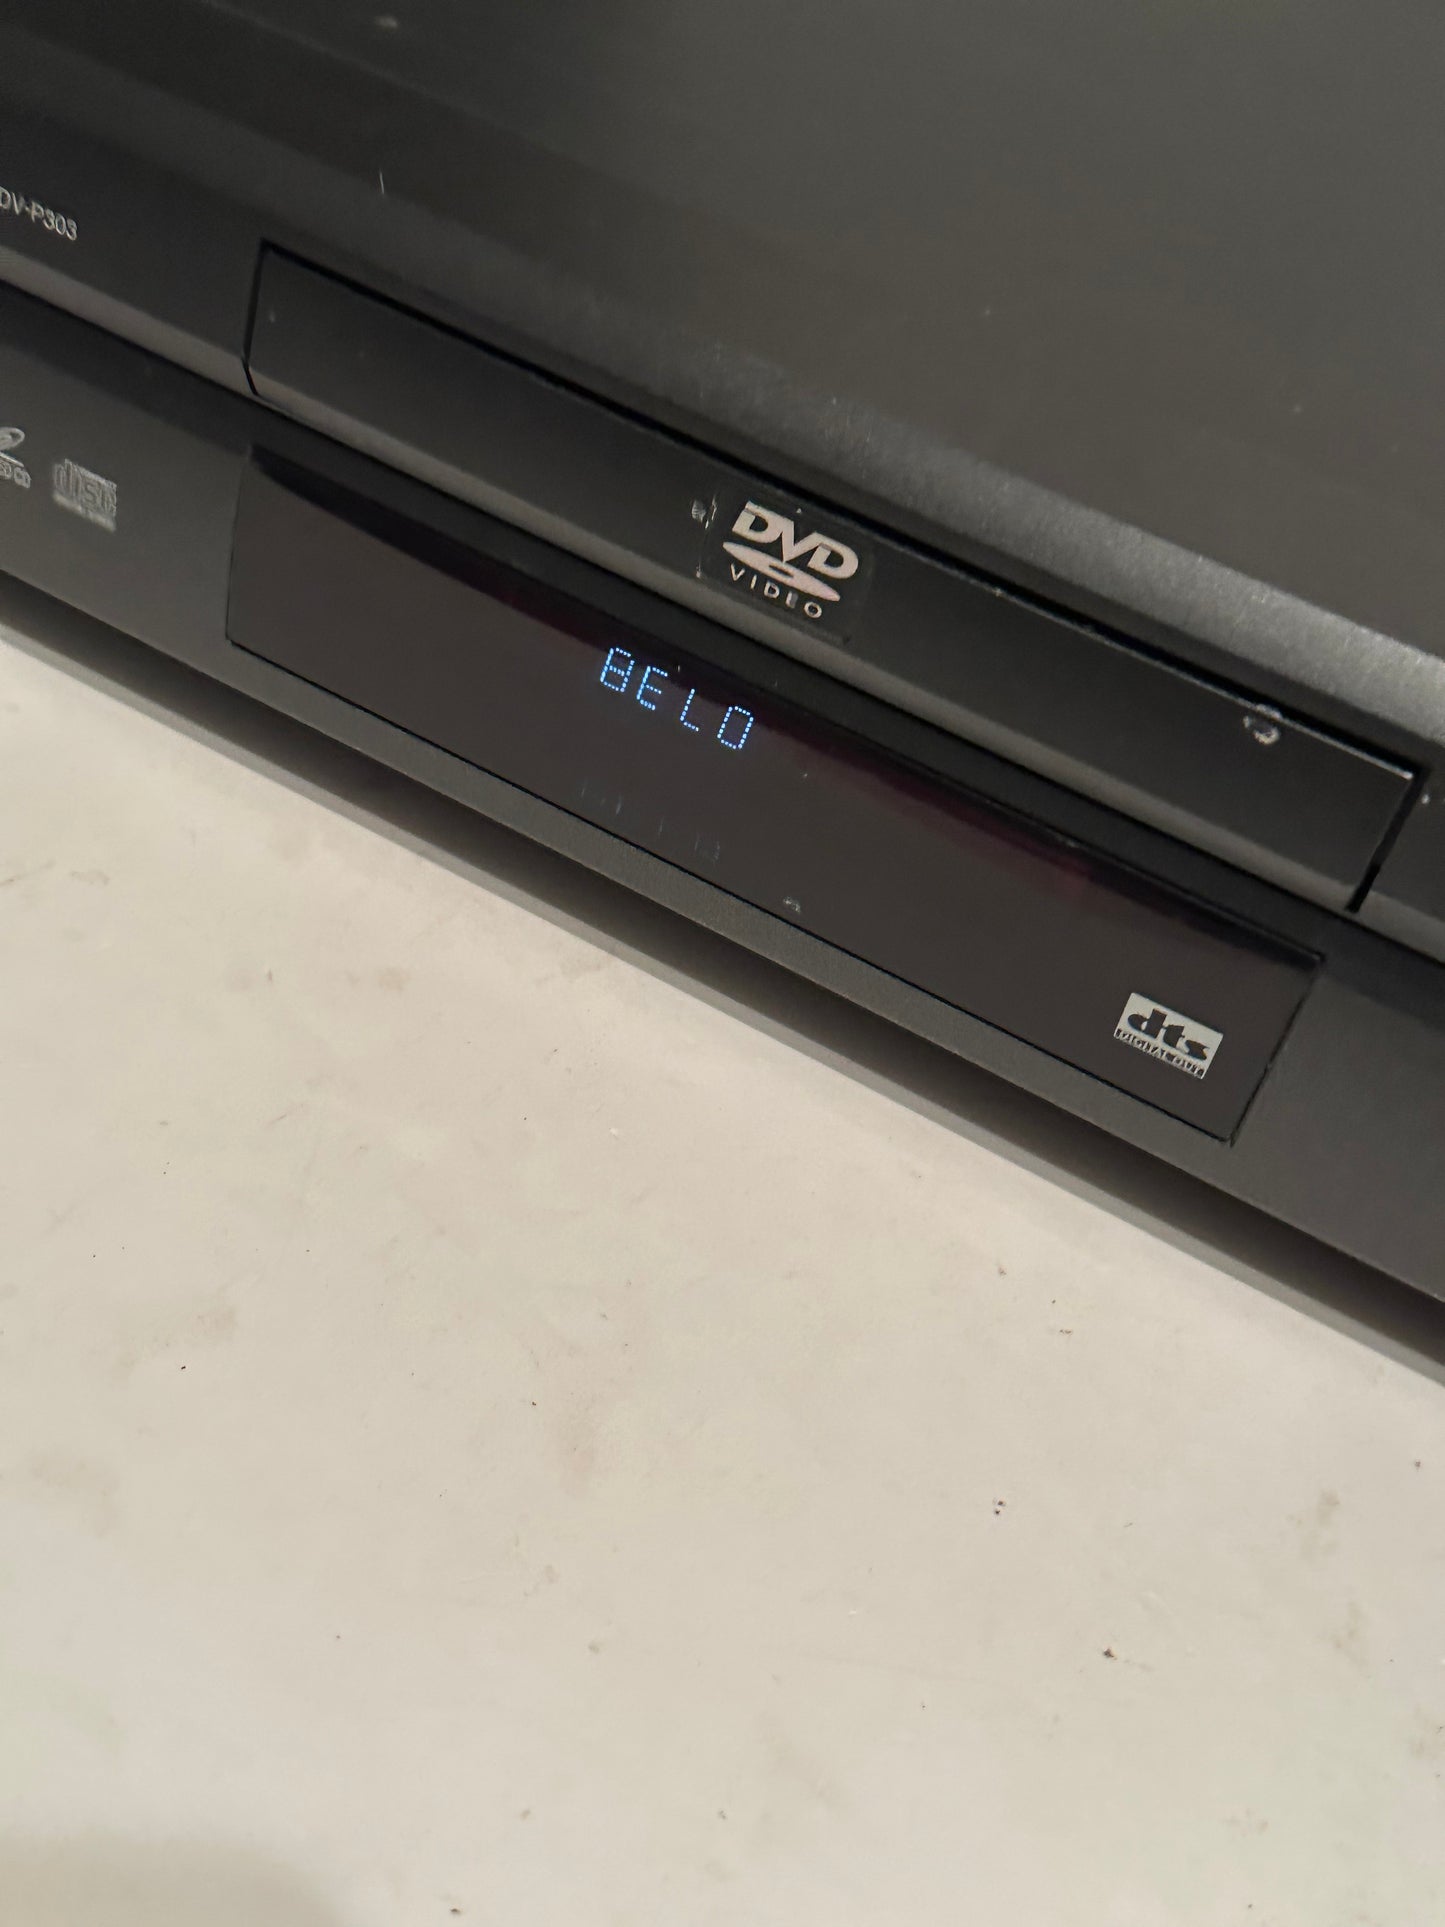 Hitachi DV-P303 DVD/CD Video Player